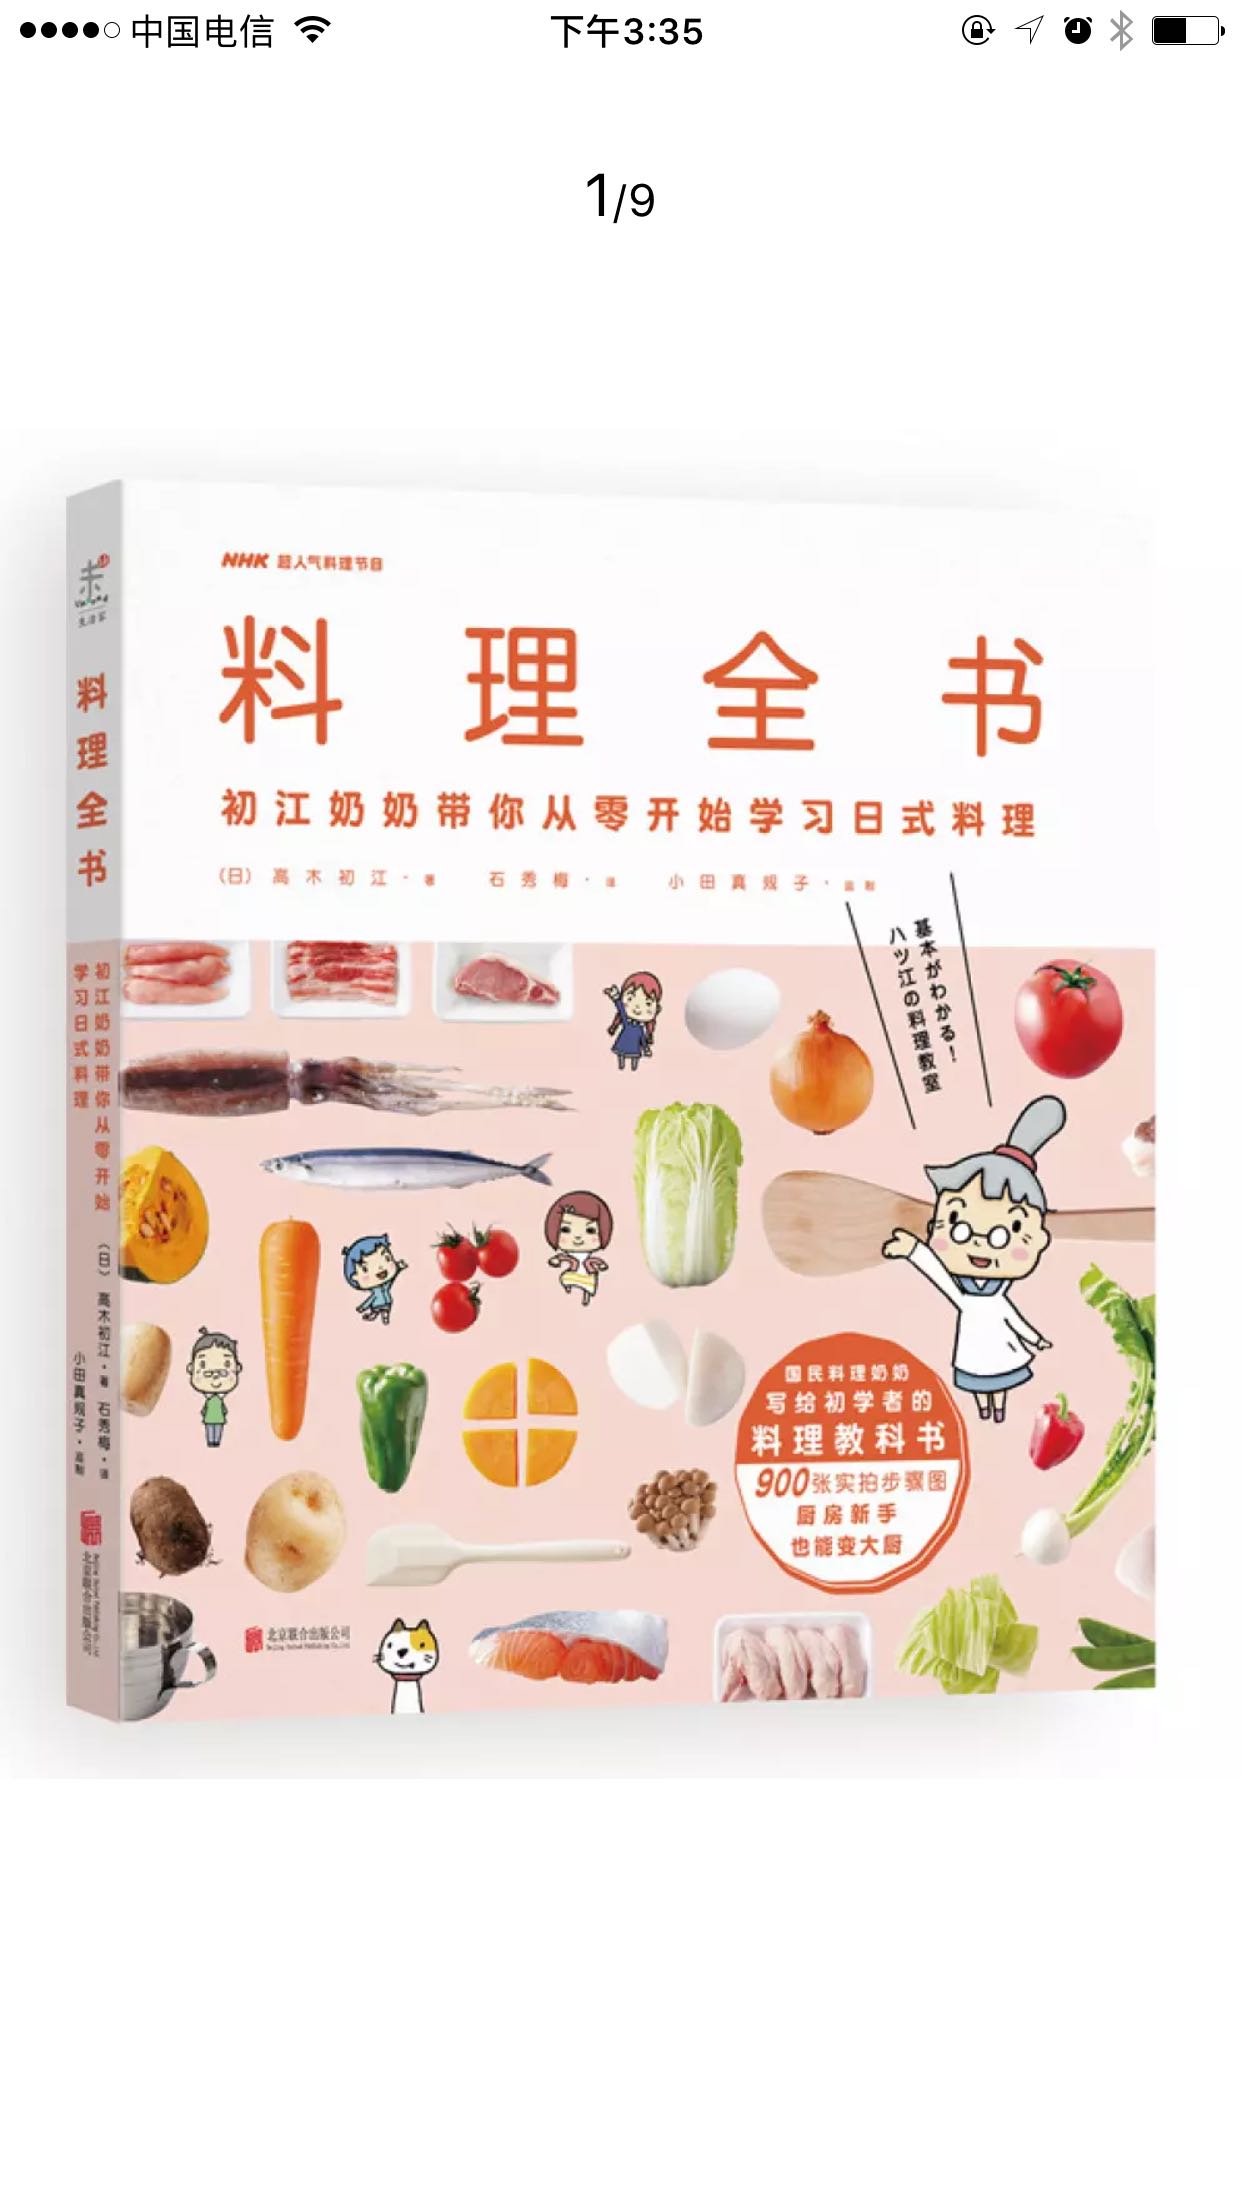 这本料理全书真的很有用里面的材料也很好准备，对于没有多少料理经验的人来说也很简单易操作，非常值得购买